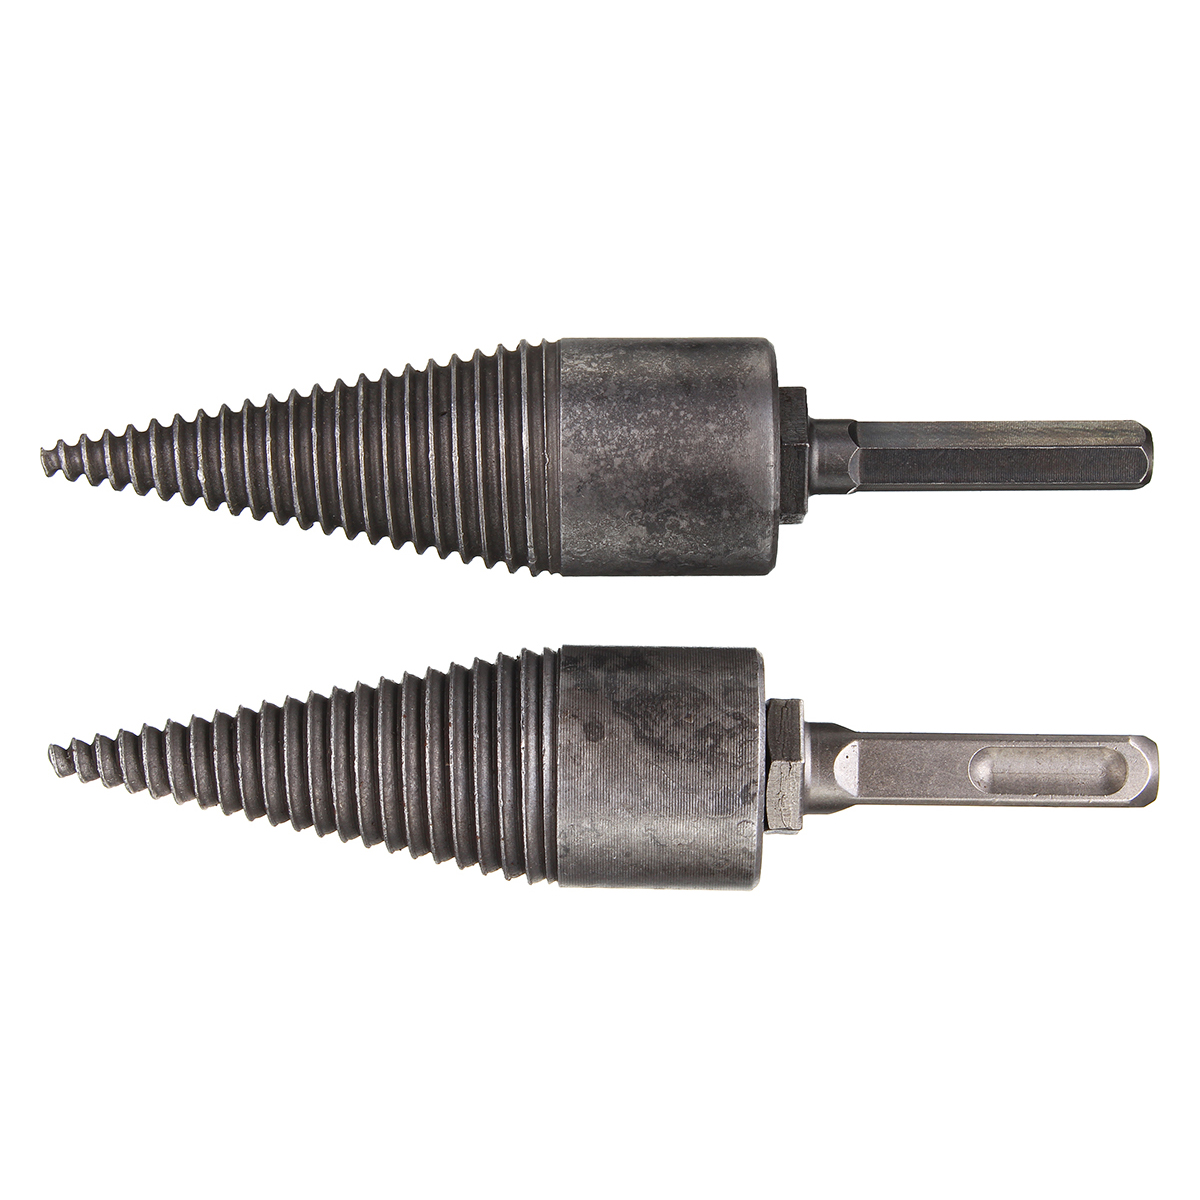 Hex-ShankSquare-Handle-Firewood-Splitting-Drill-Bit-Wood-Cone-Drilling-Tools-Kit-1632546-2